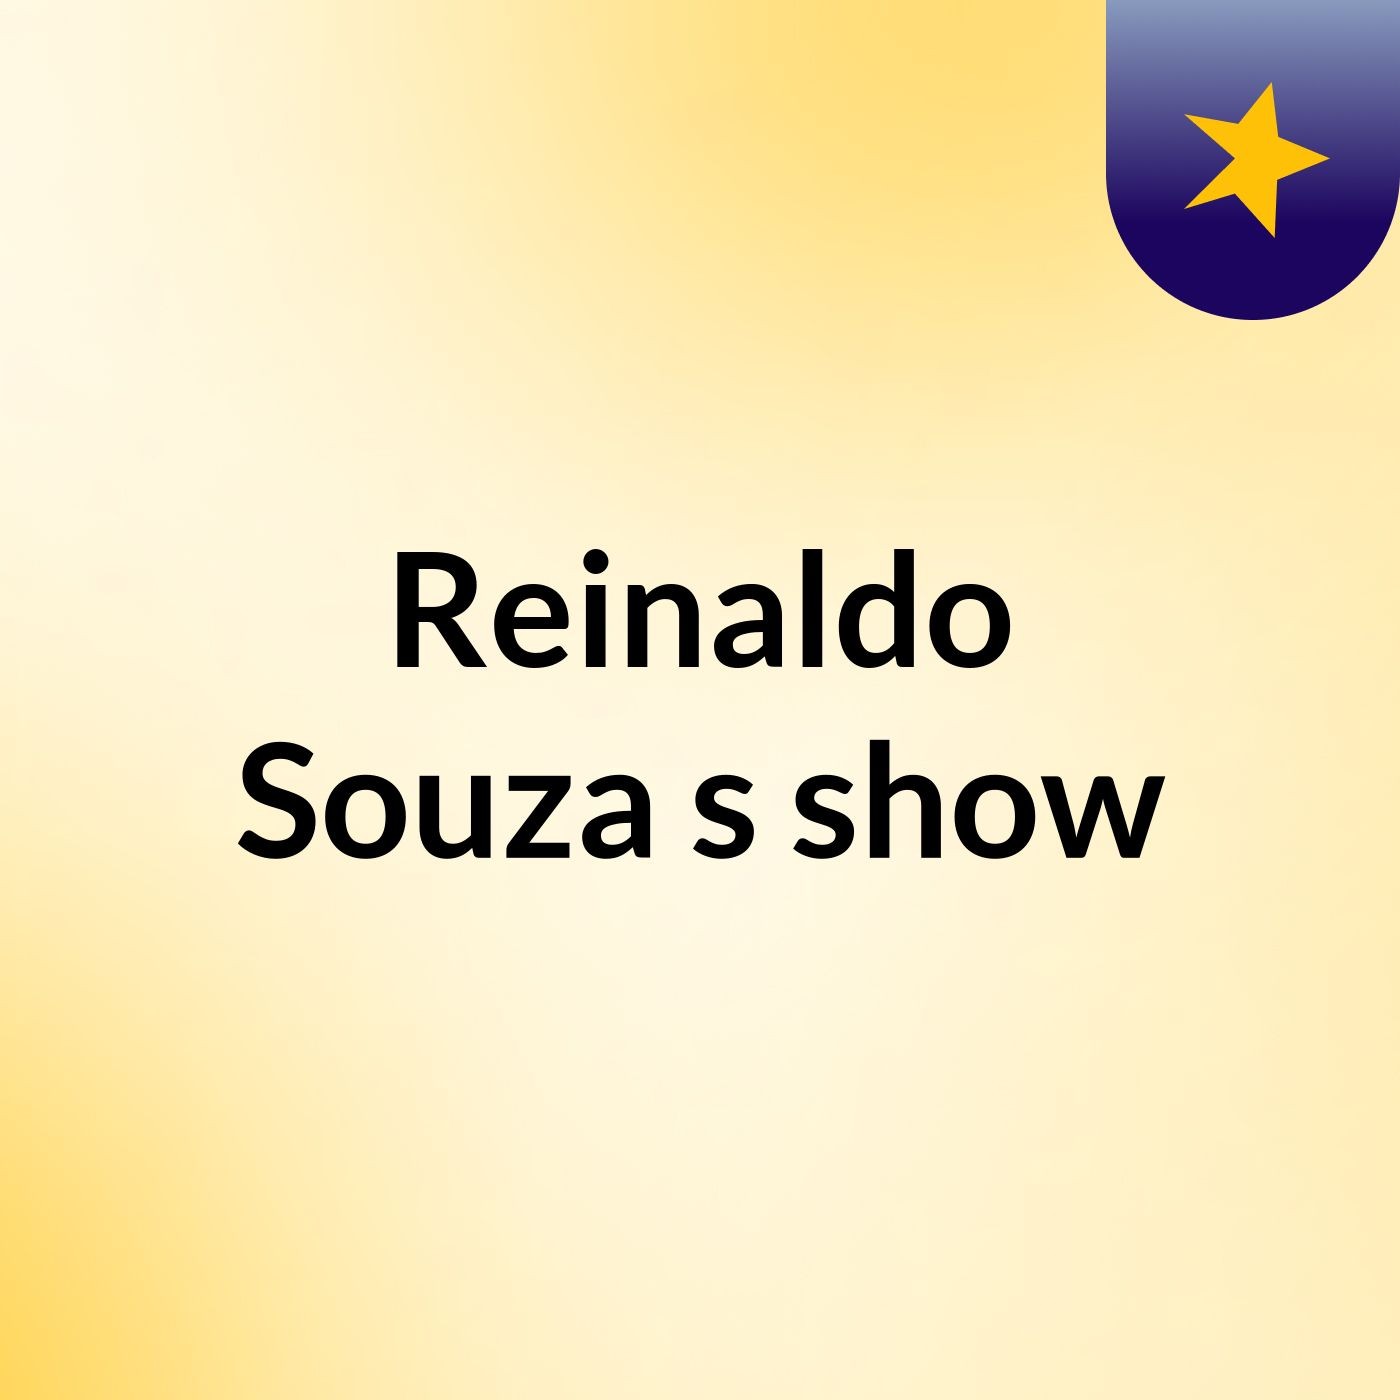 Reinaldo Souza's show